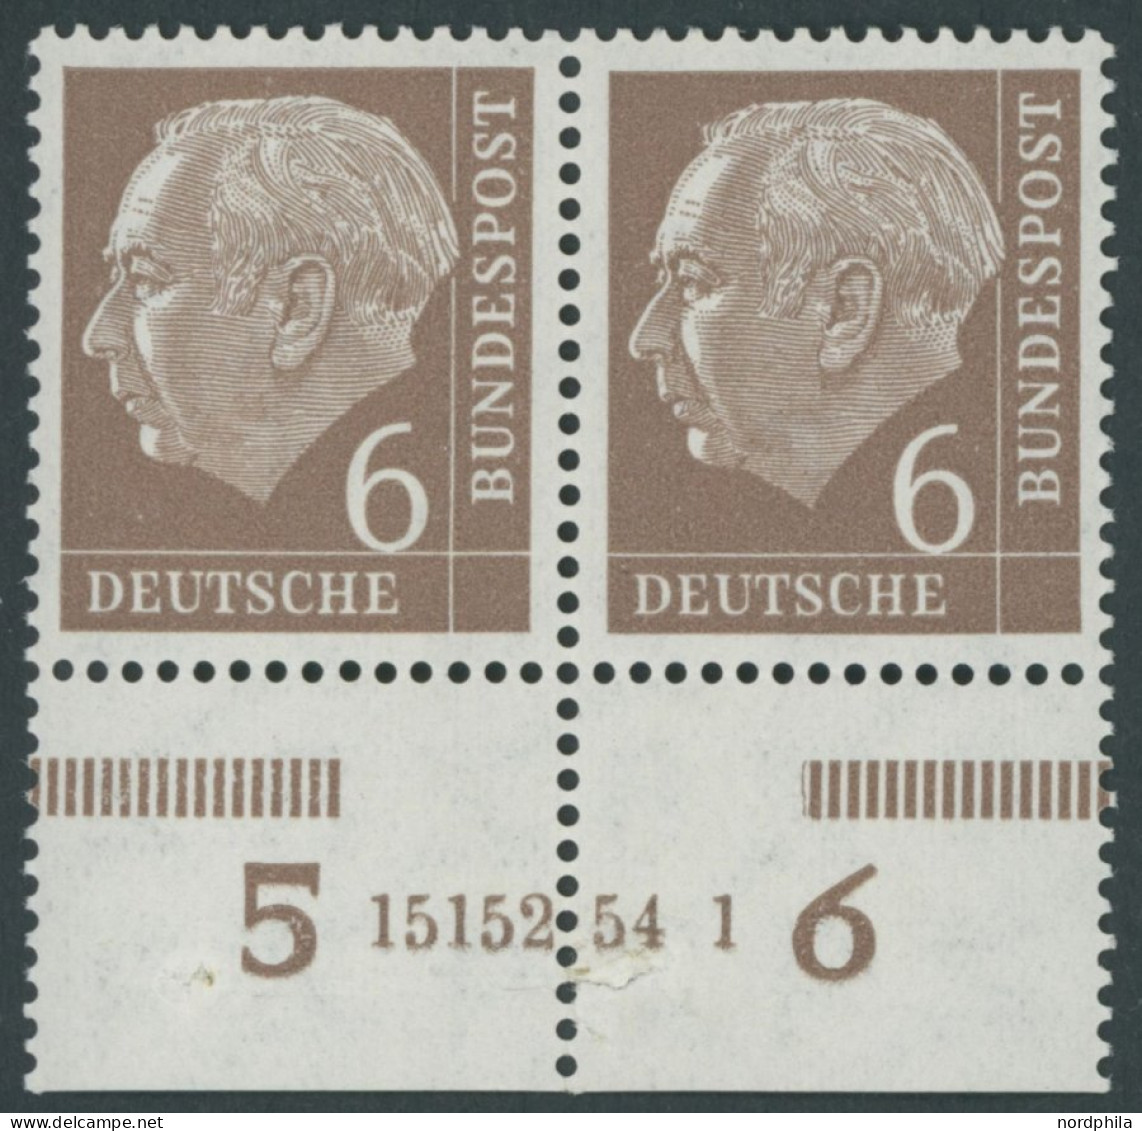 BUNDESREPUBLIK 180xHAN **, 1954, 6 Pf. Heuss, Unterrandpaar Mit HAN 15152.54 1, (Klammerspur), Marken  Postfrisch, Prach - Nuevos